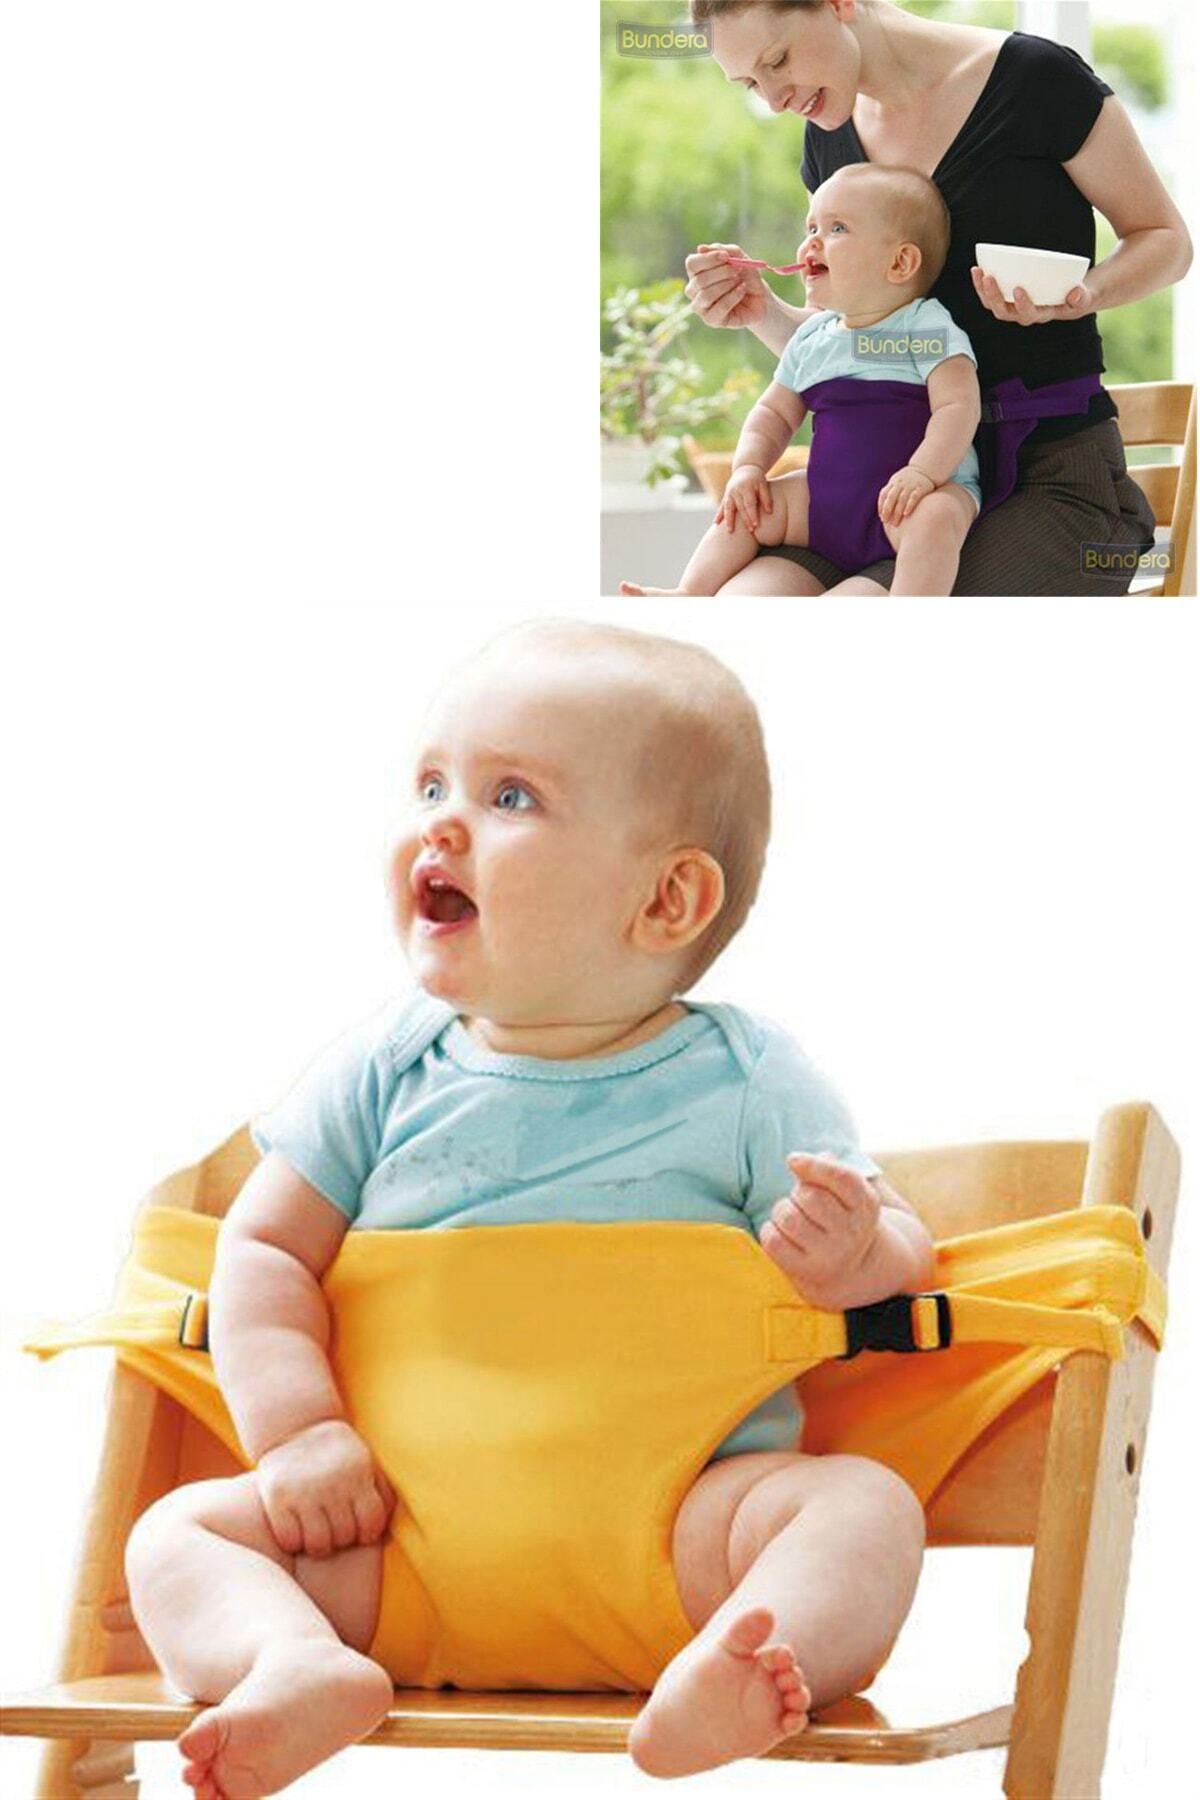 Bundera Bebek Mama Sandalyesi Sarı Emniyet Kemeri Bebek Güvenlik Kemeri, Kilit Bebek Koruma Koruyucu